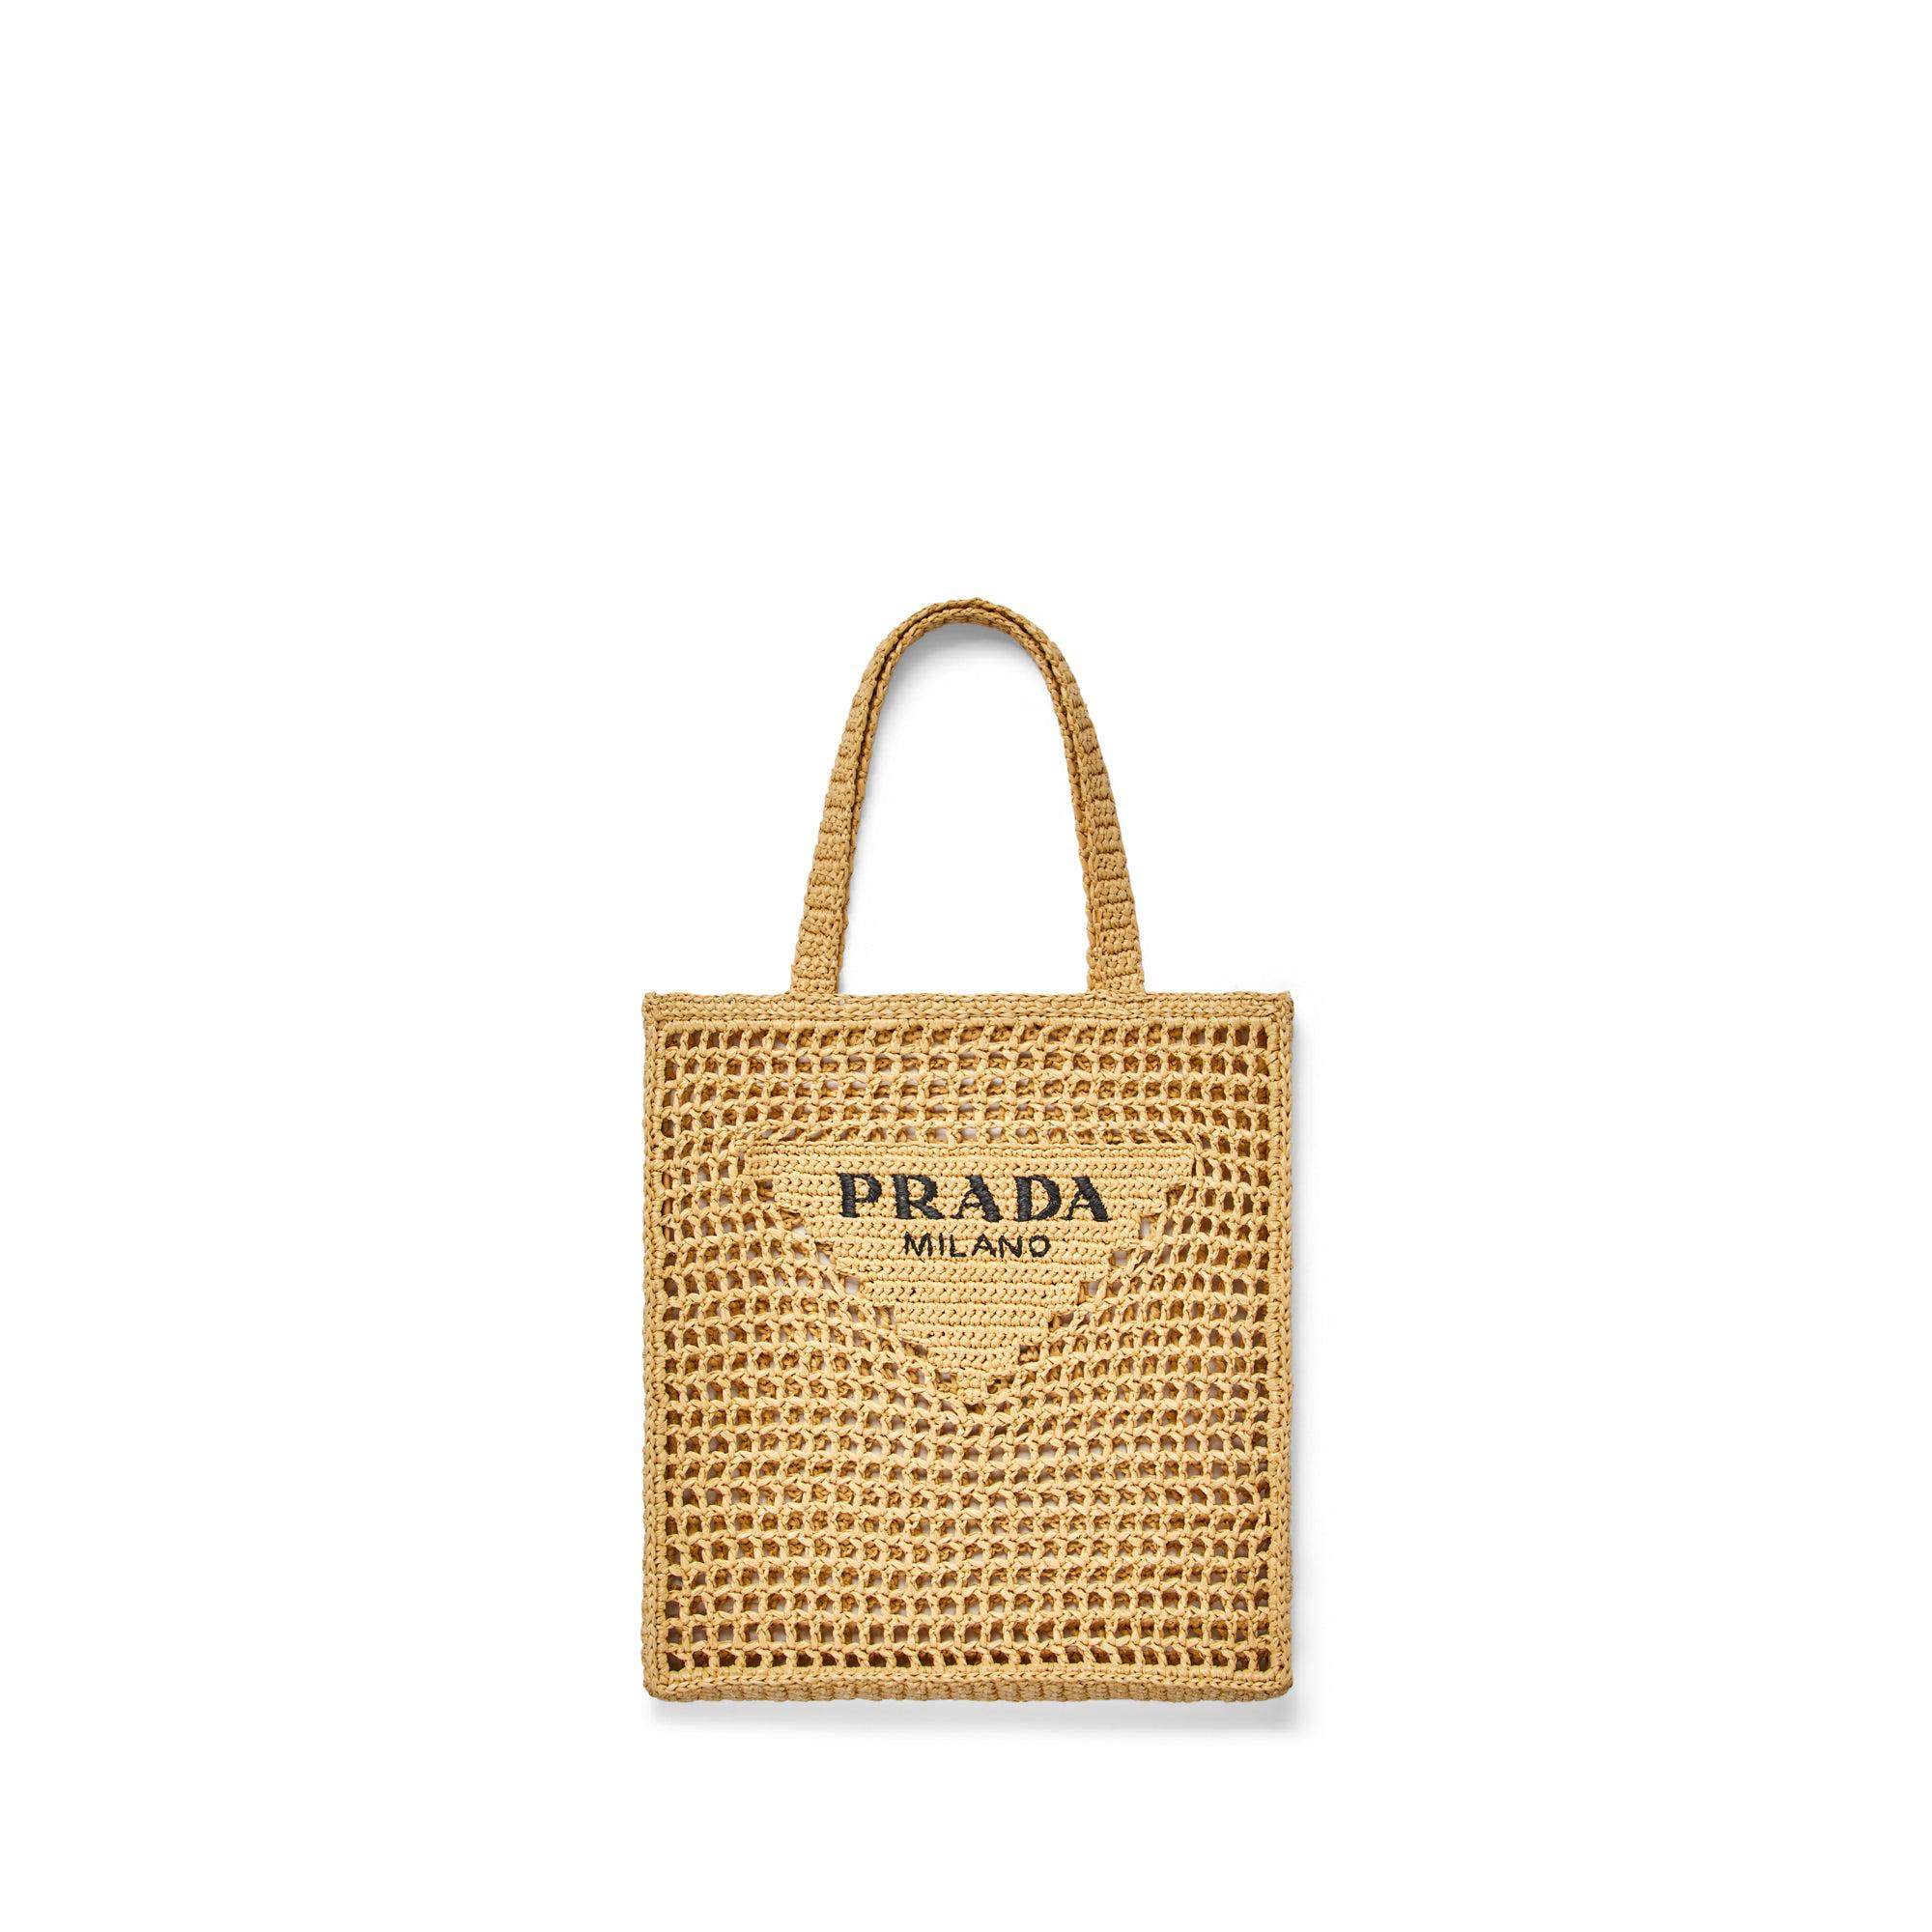 Prada Women's Rafia Tote Bag (Natural) by PRADA